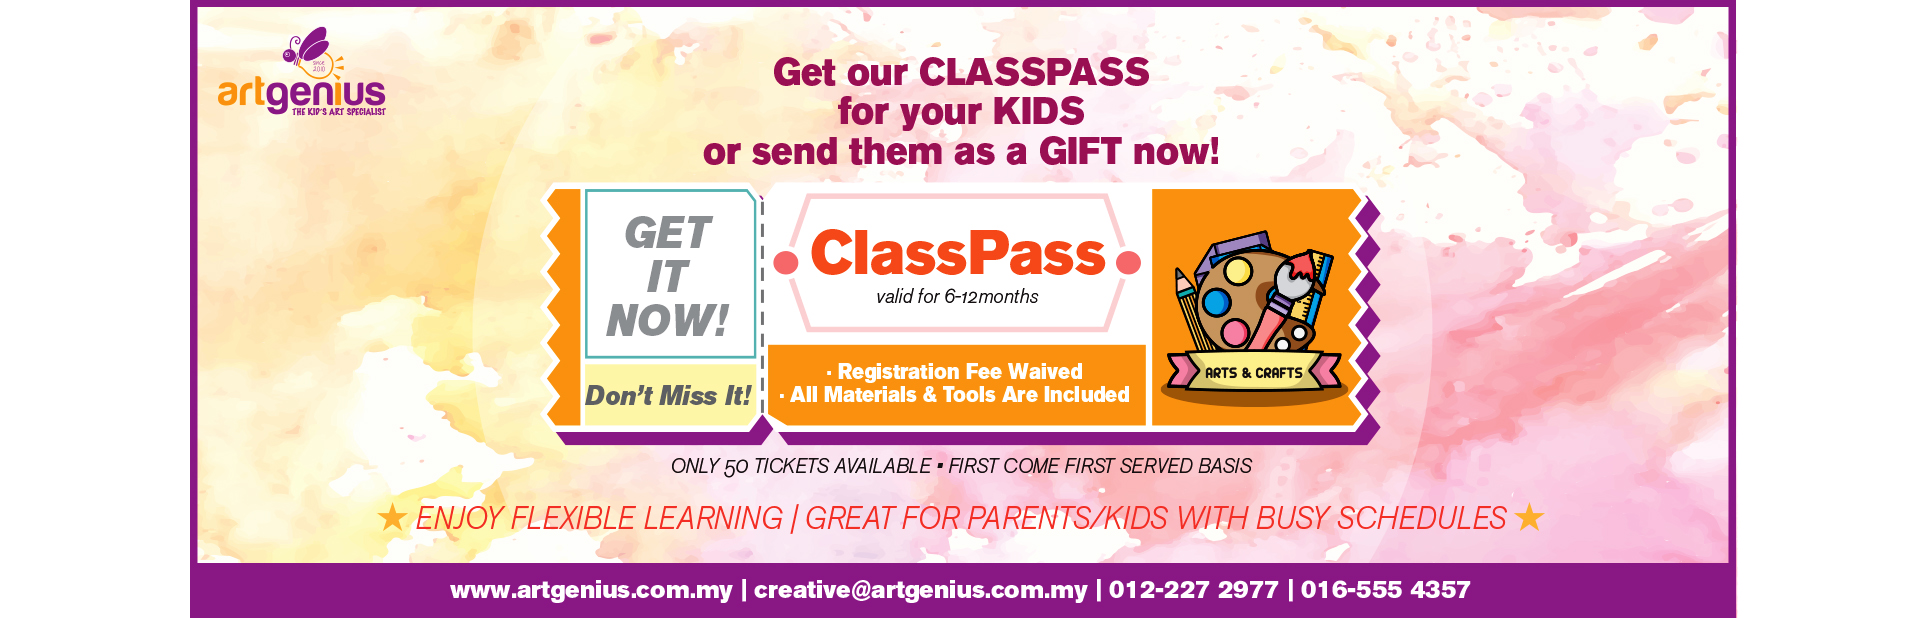 classpass-2020-web-banner